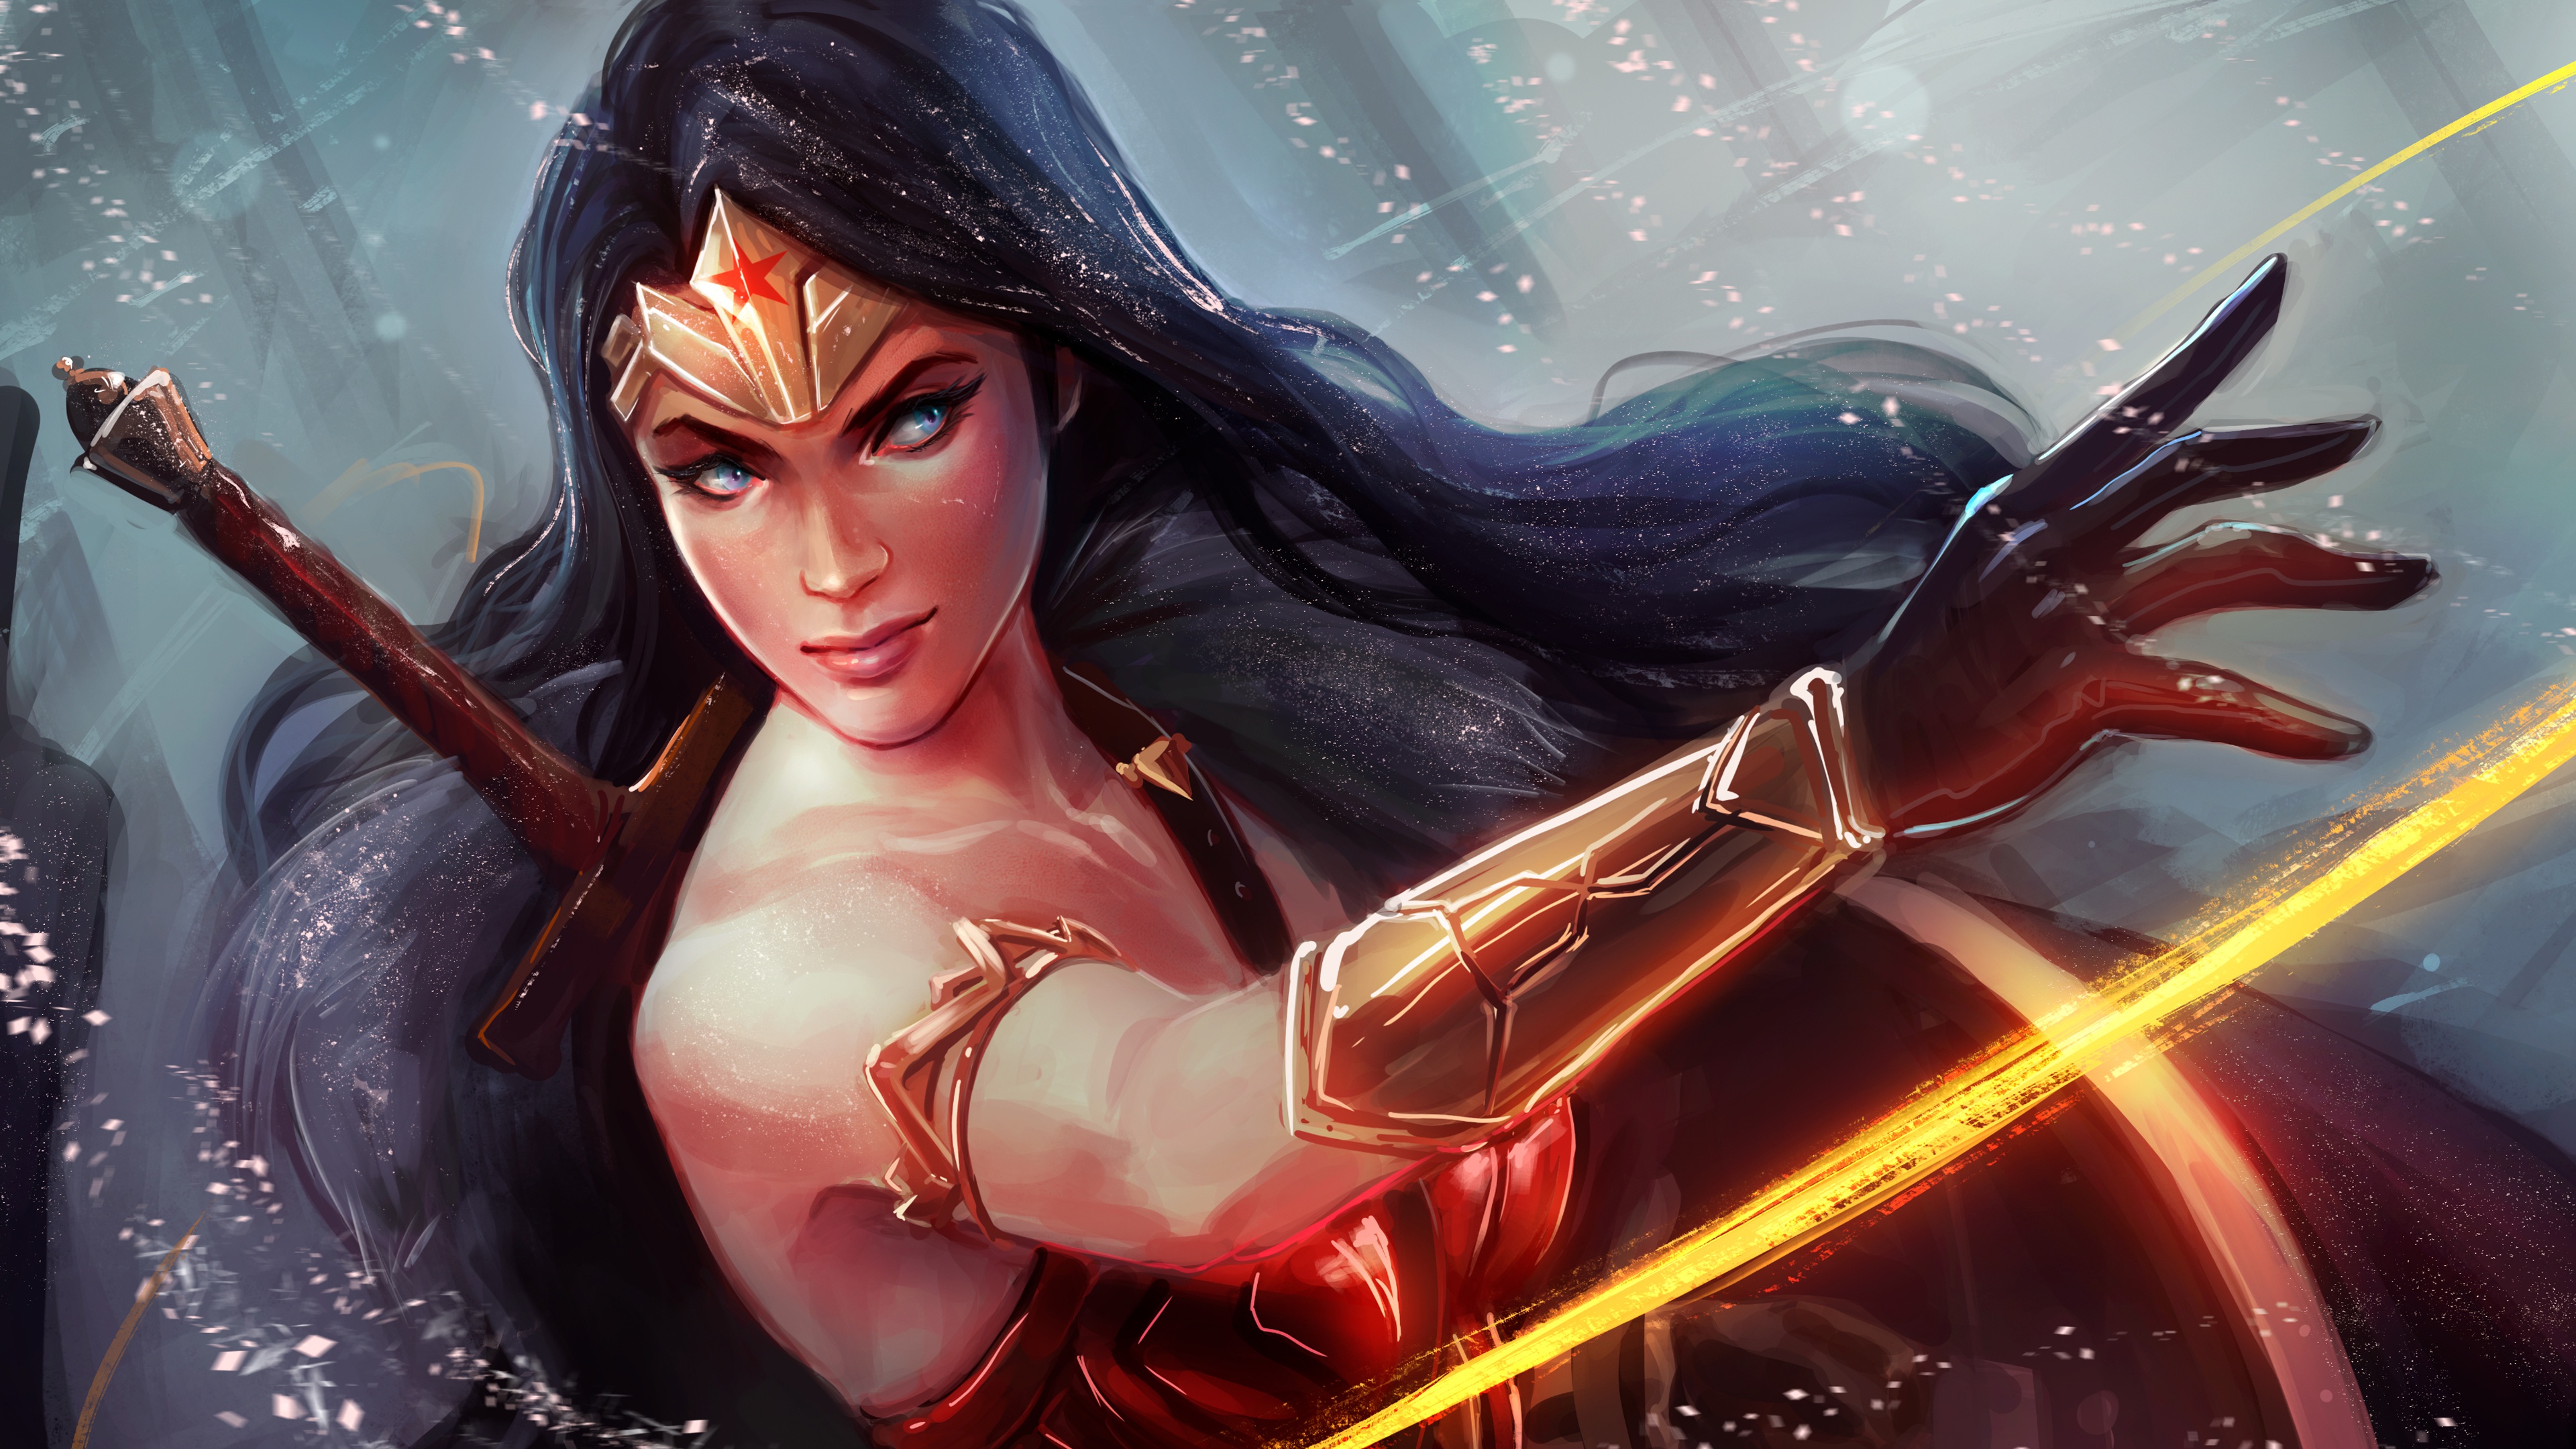 Wallpaper Brunette girl Wonder Woman hero warrior Fantasy